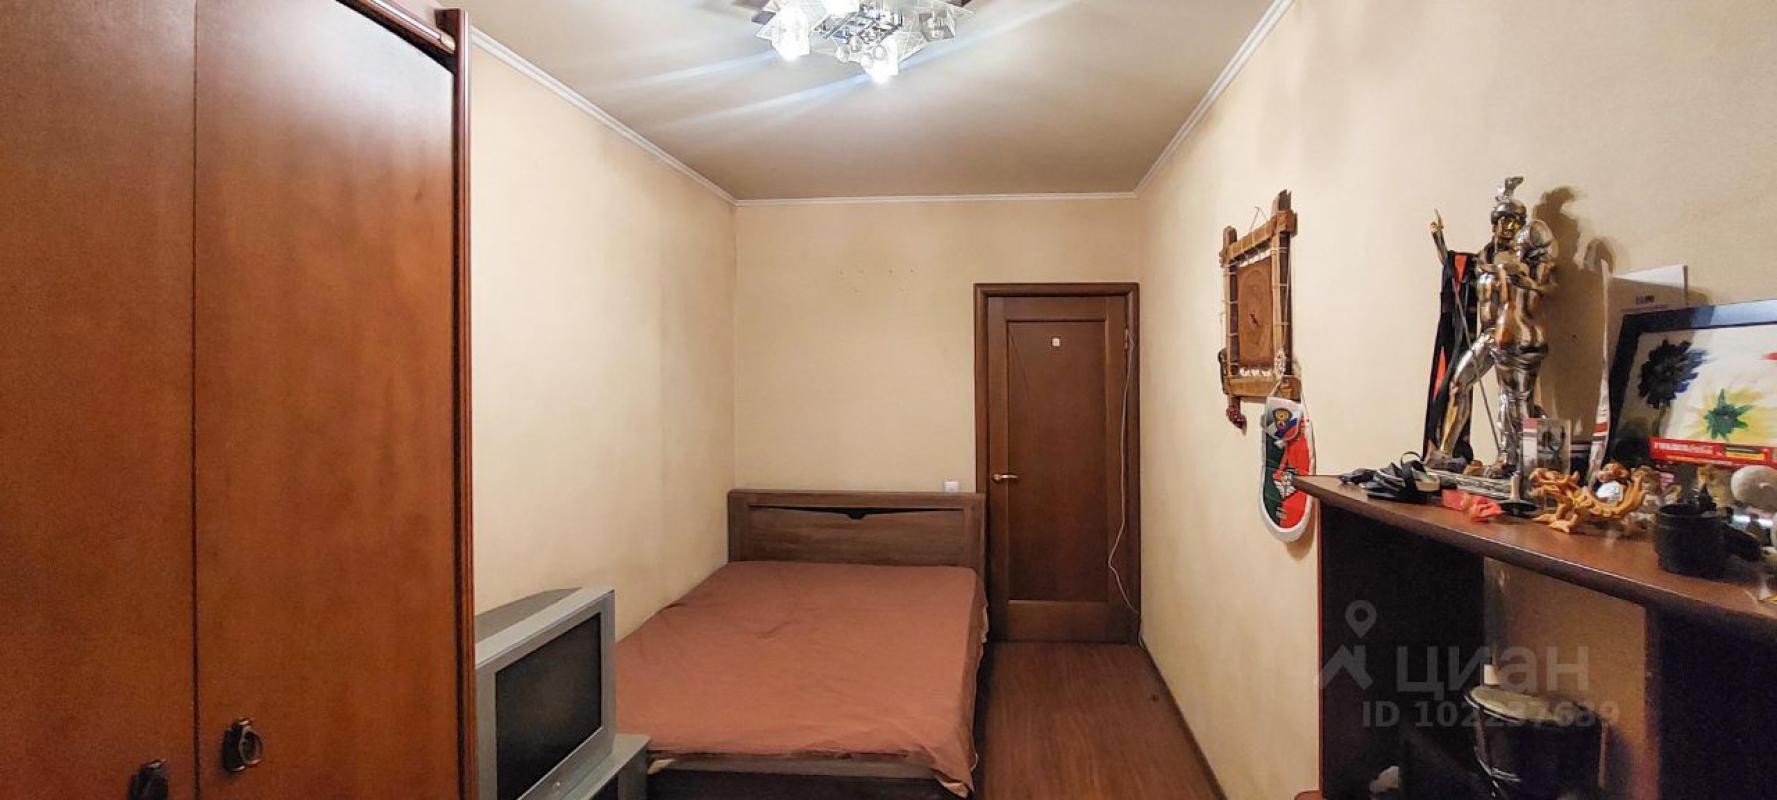 Продам 2х комнатную квартиру в г. - Новотроицк